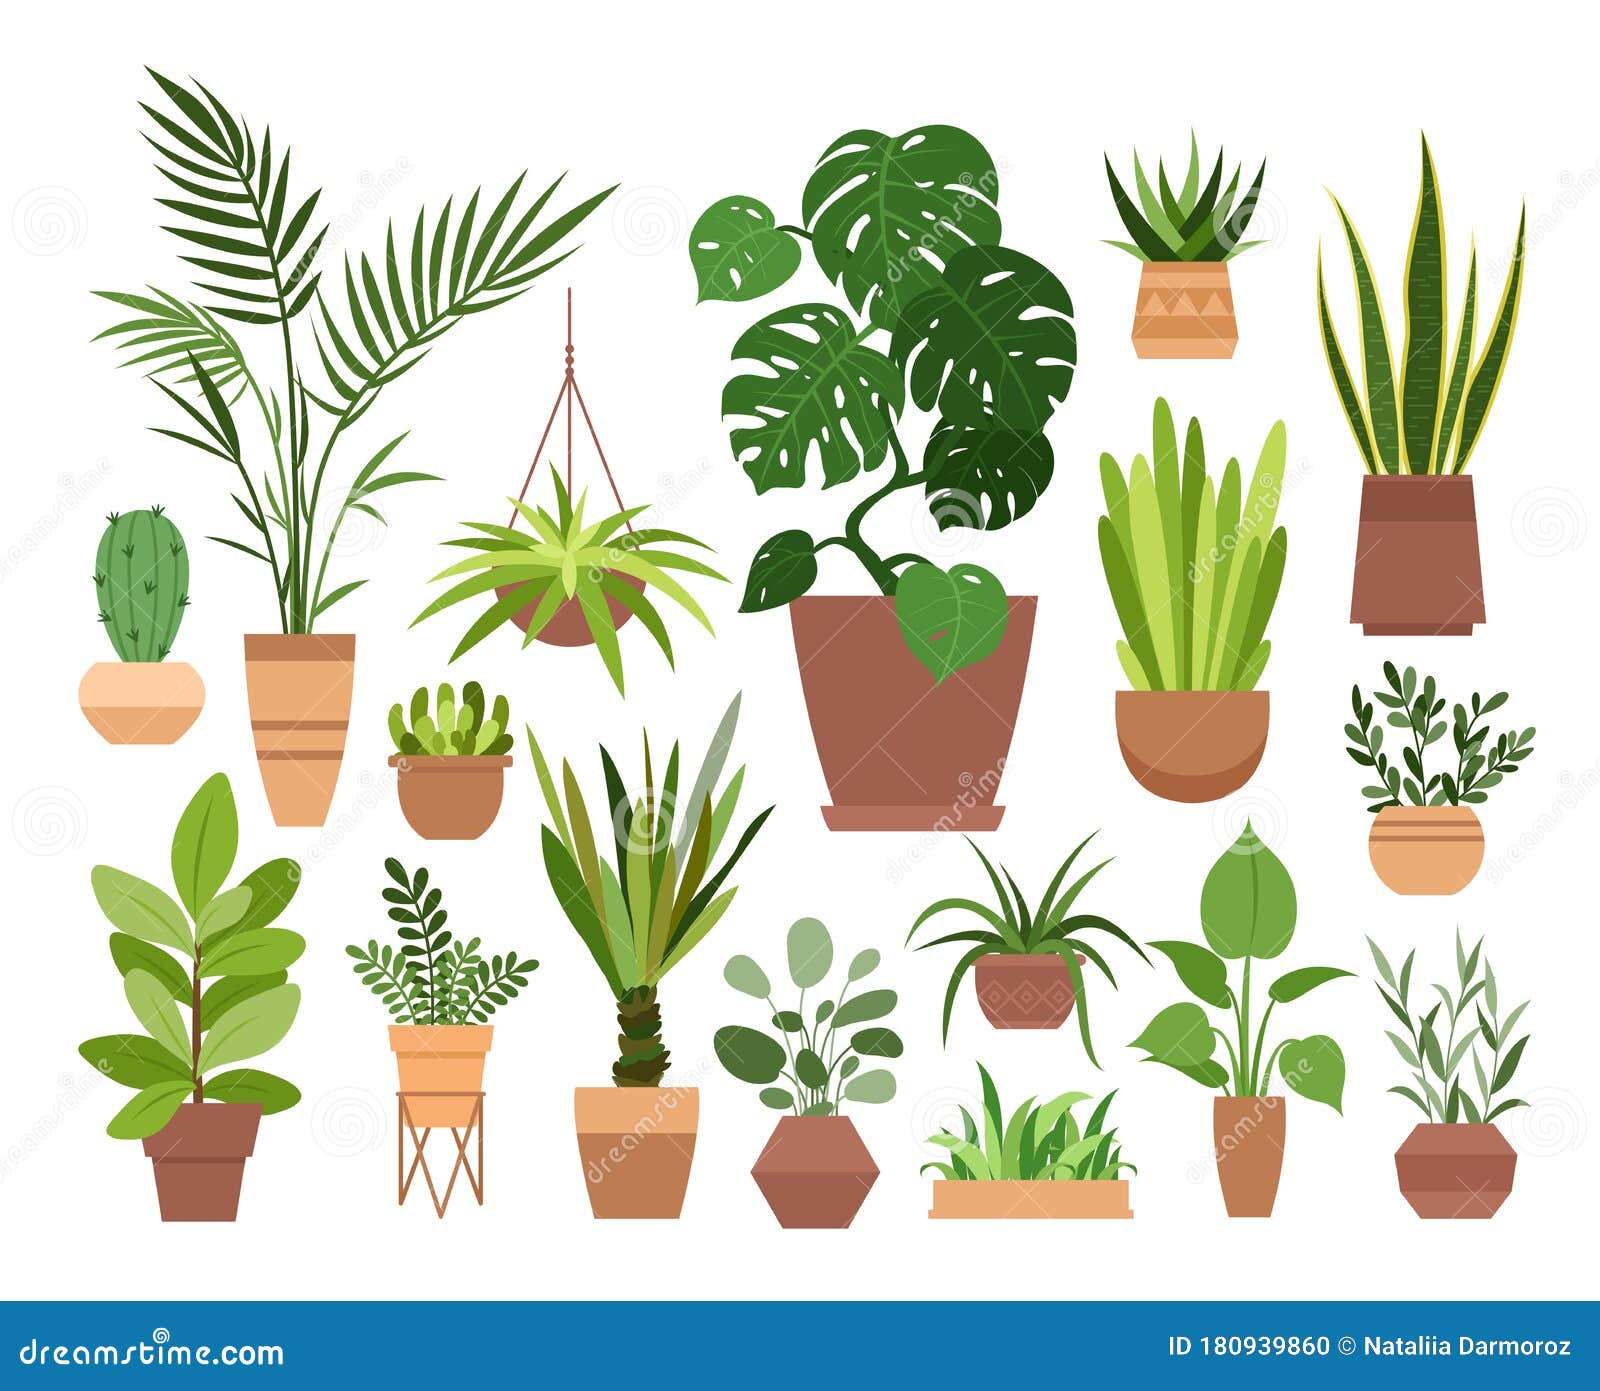 盆栽矢量图集 卡通平面不同室内盆栽装饰室内植物向量例证 插画包括有内部 容器 灌木 查出